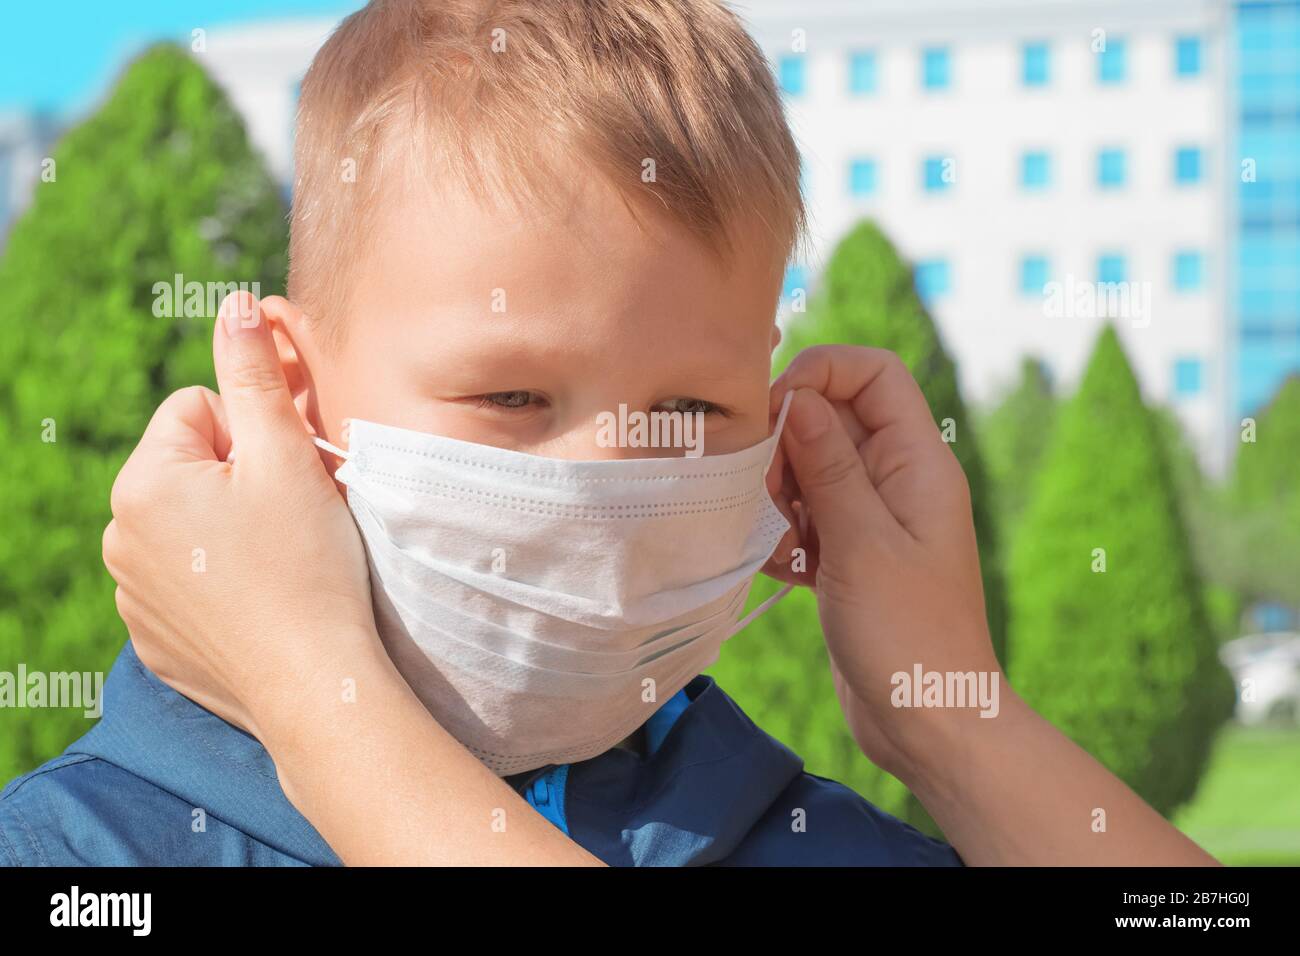 La niña pone en la cara del niño una máscara médica protectora para la prevención de enfermedades virales Foto de stock